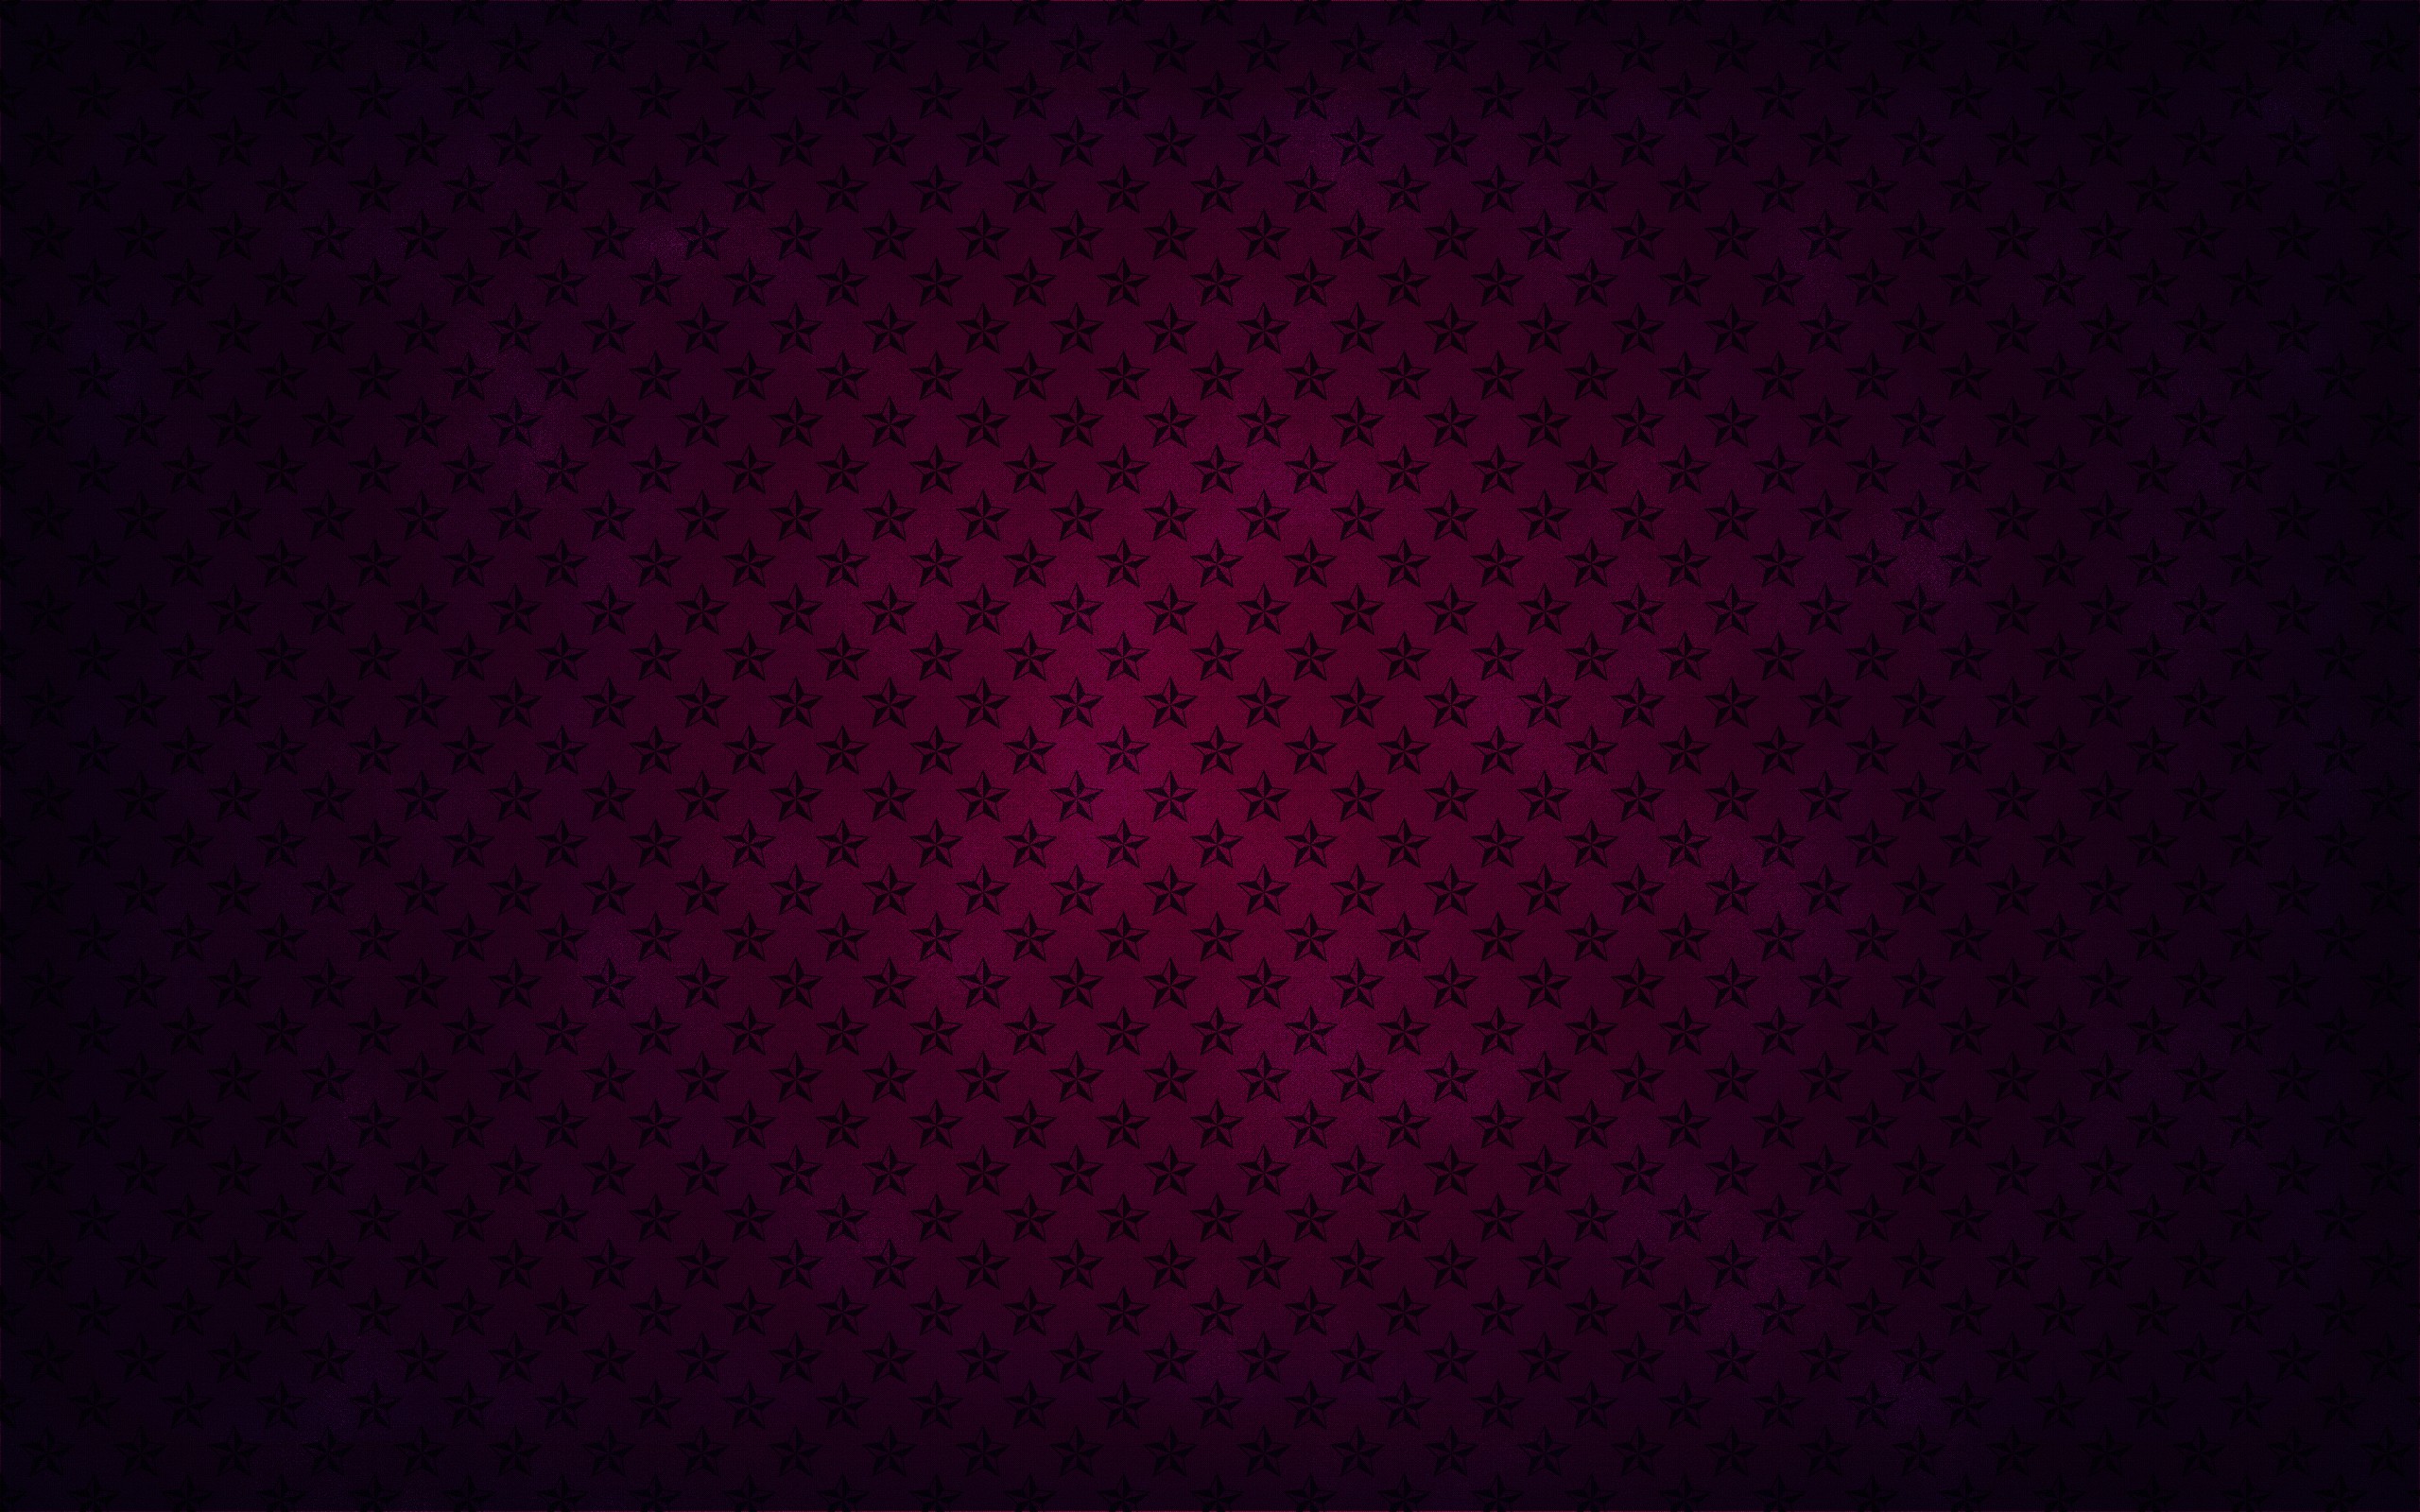 Dark Pink Wallpapers Hd | Pixelstalk.net